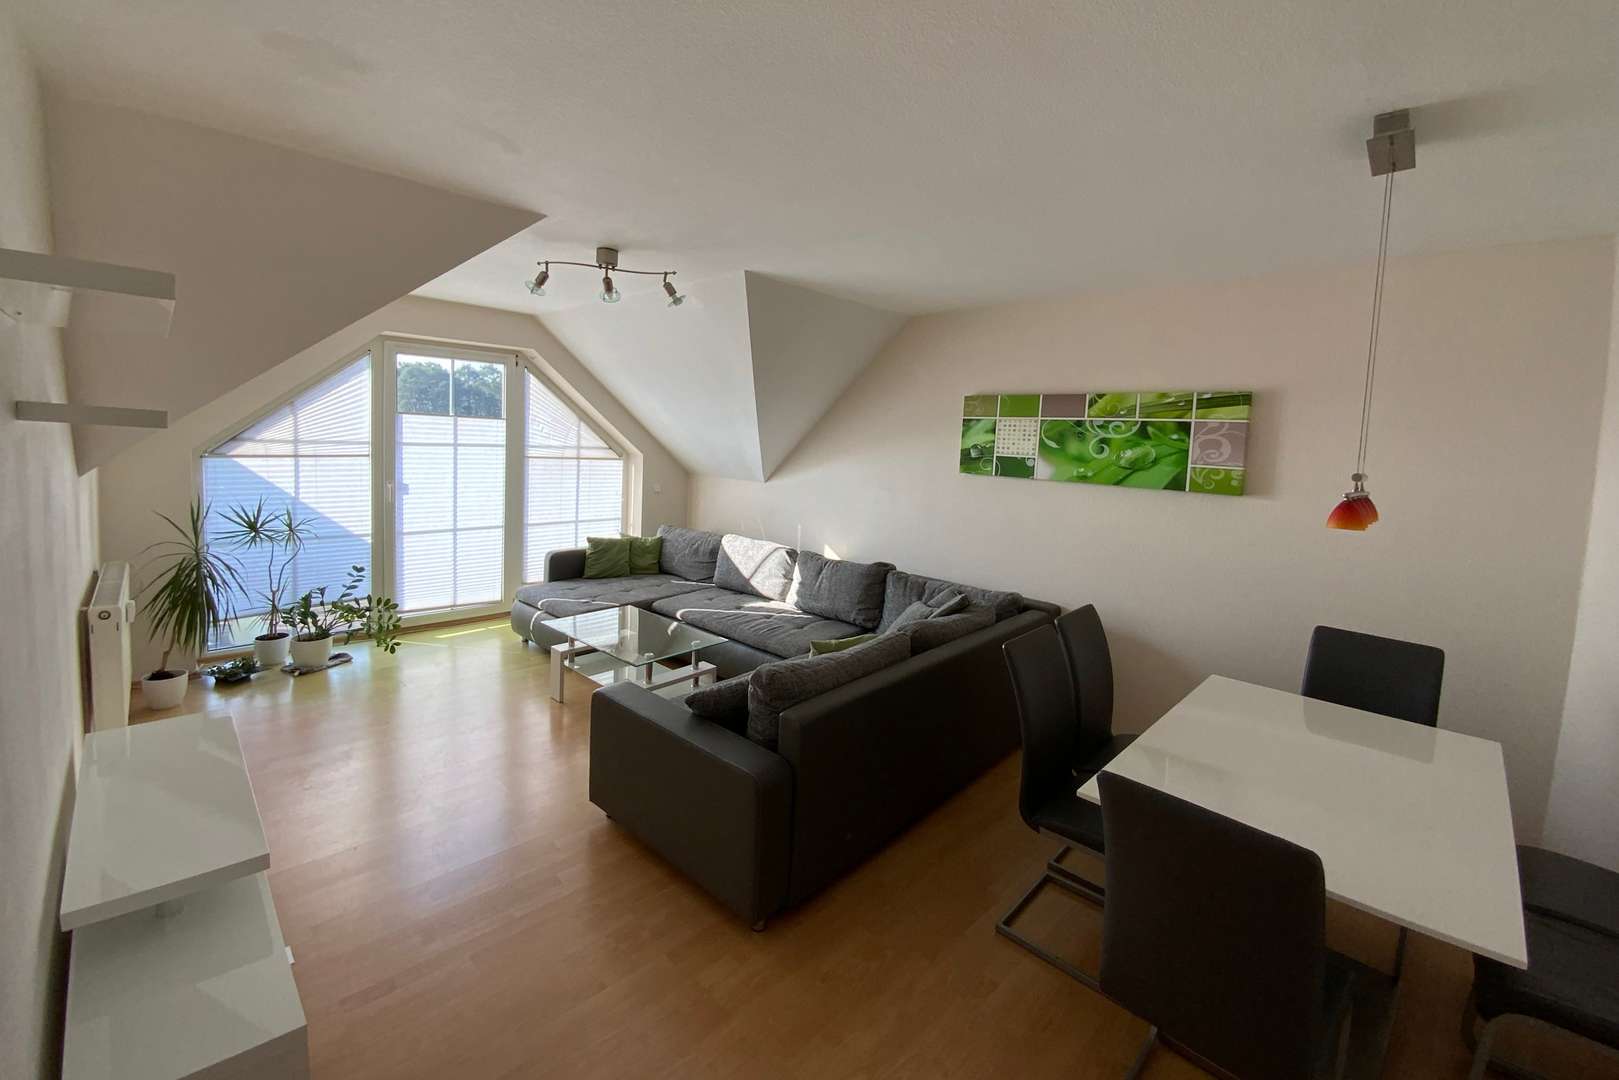 Wohnzimmer - Dachgeschosswohnung in 91336 Heroldsbach mit 53m² kaufen